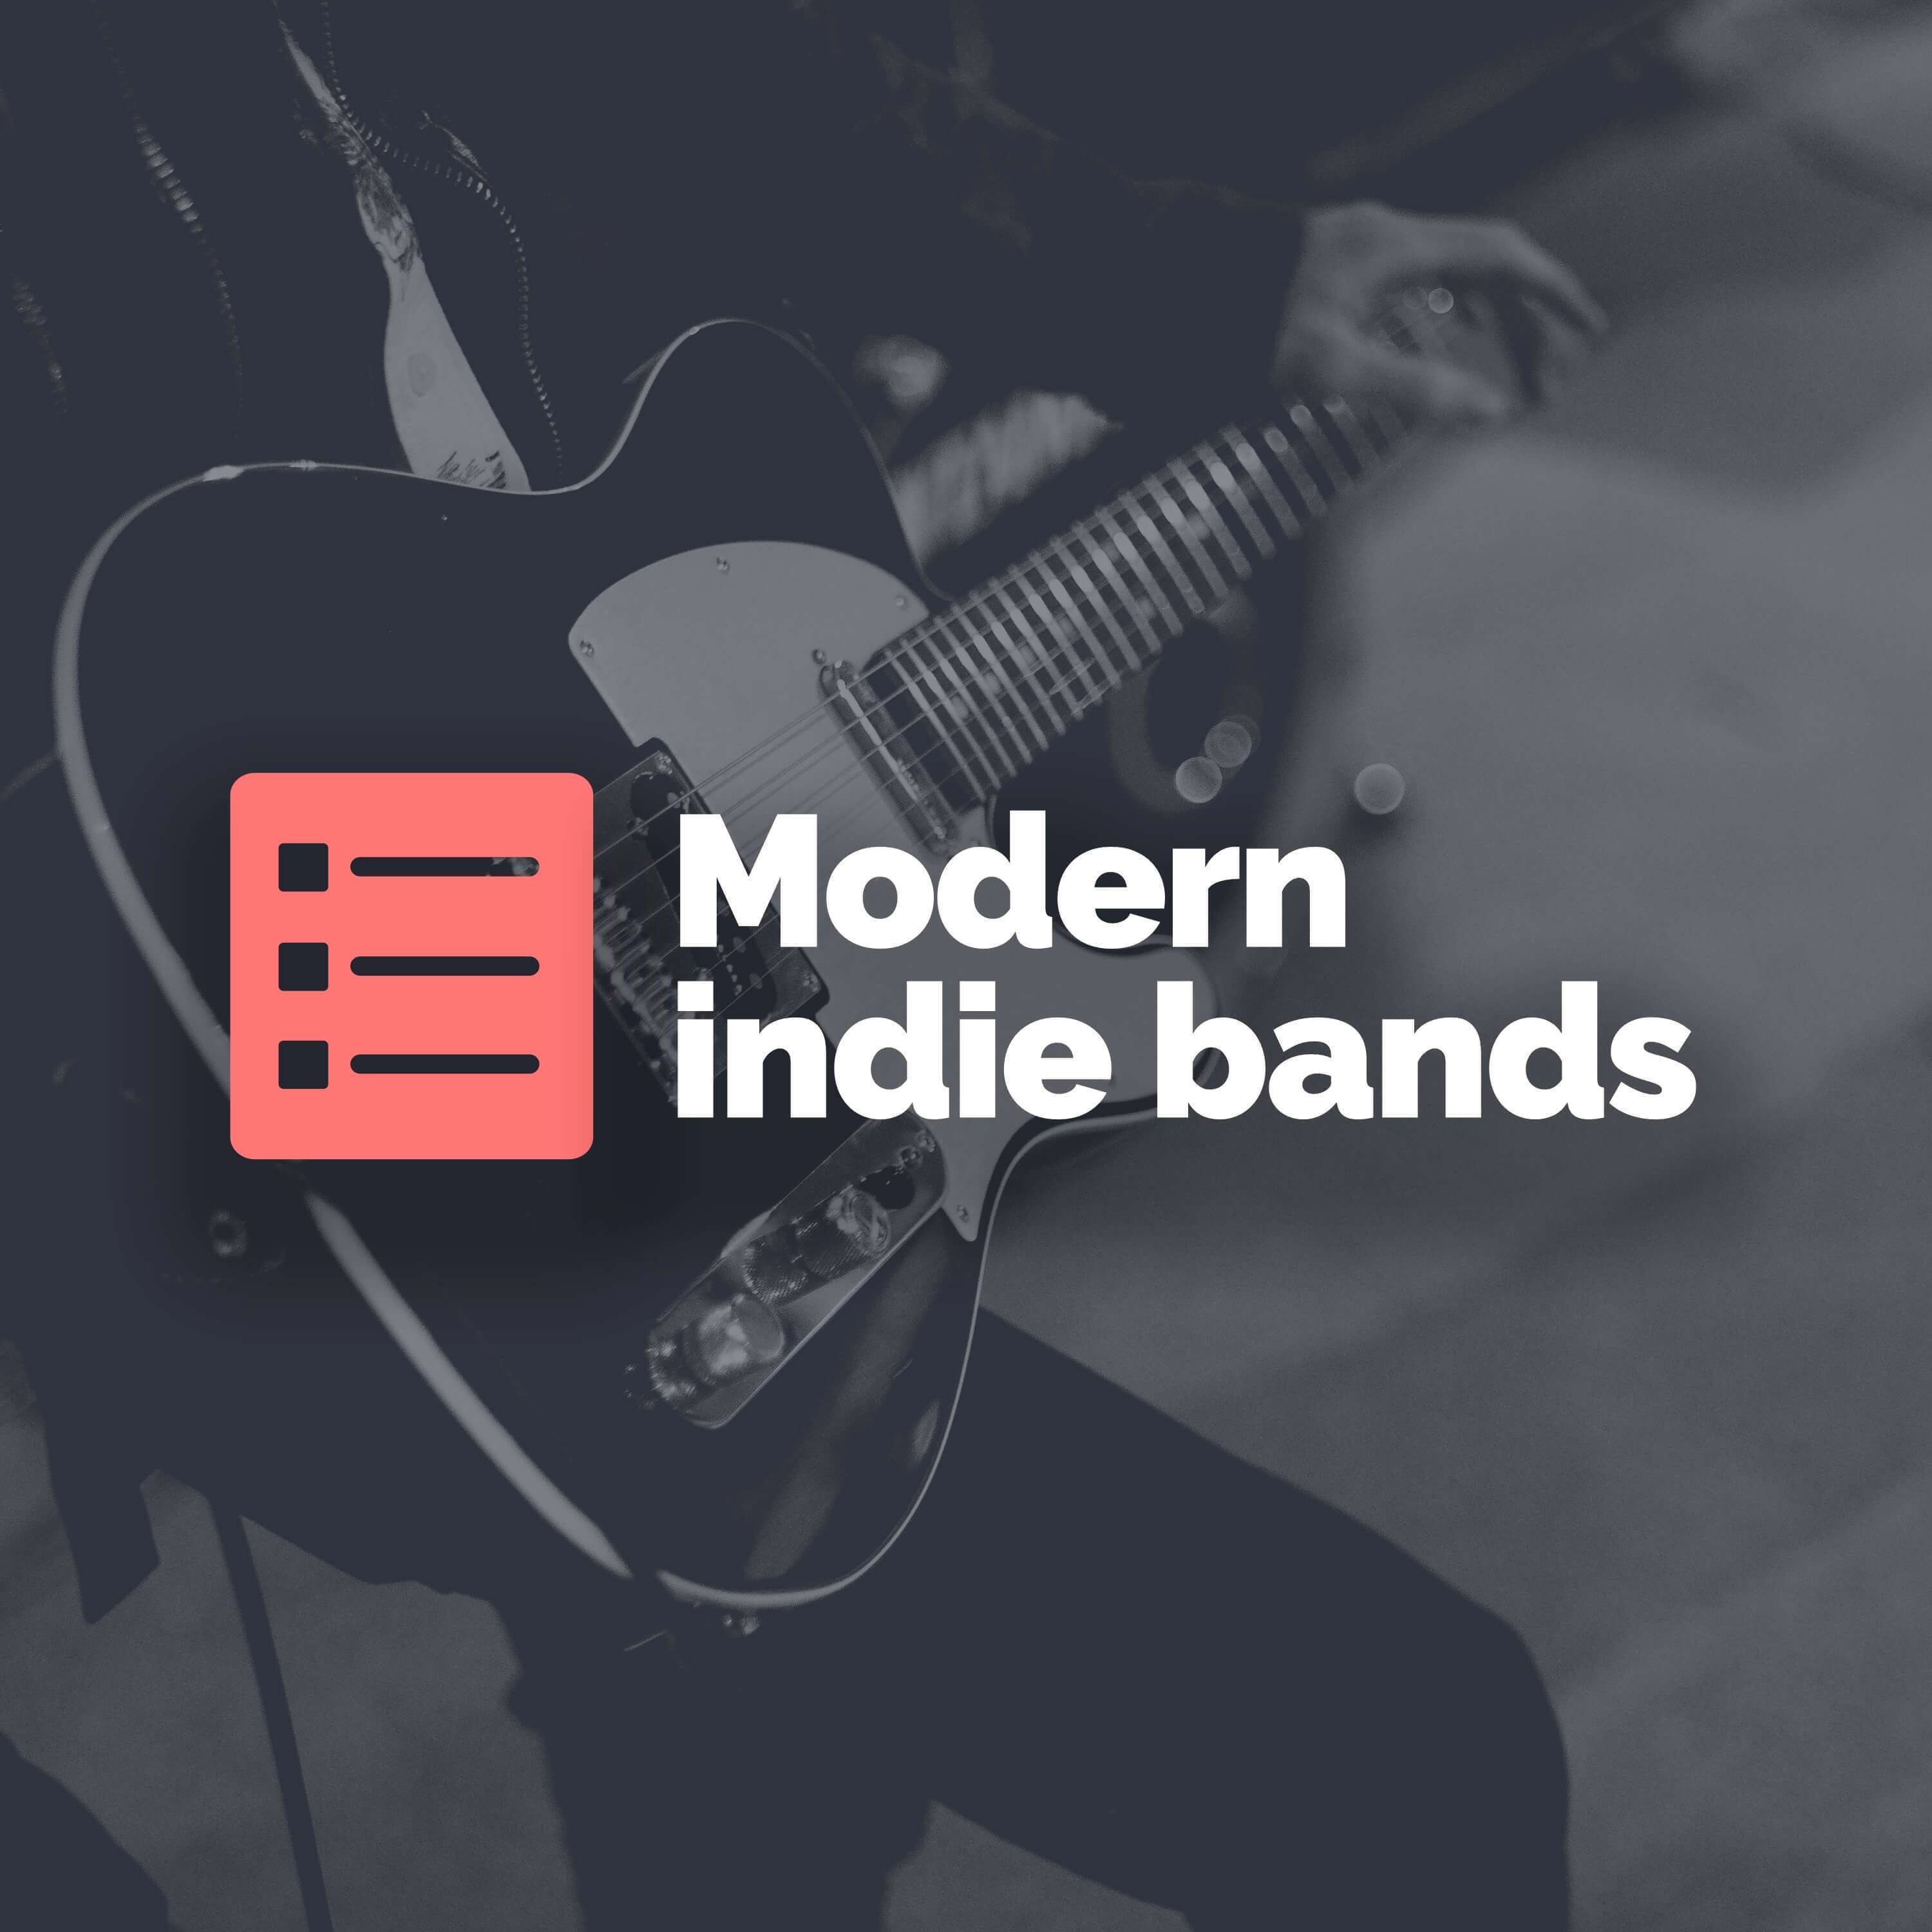 Top 5 modern indie bands